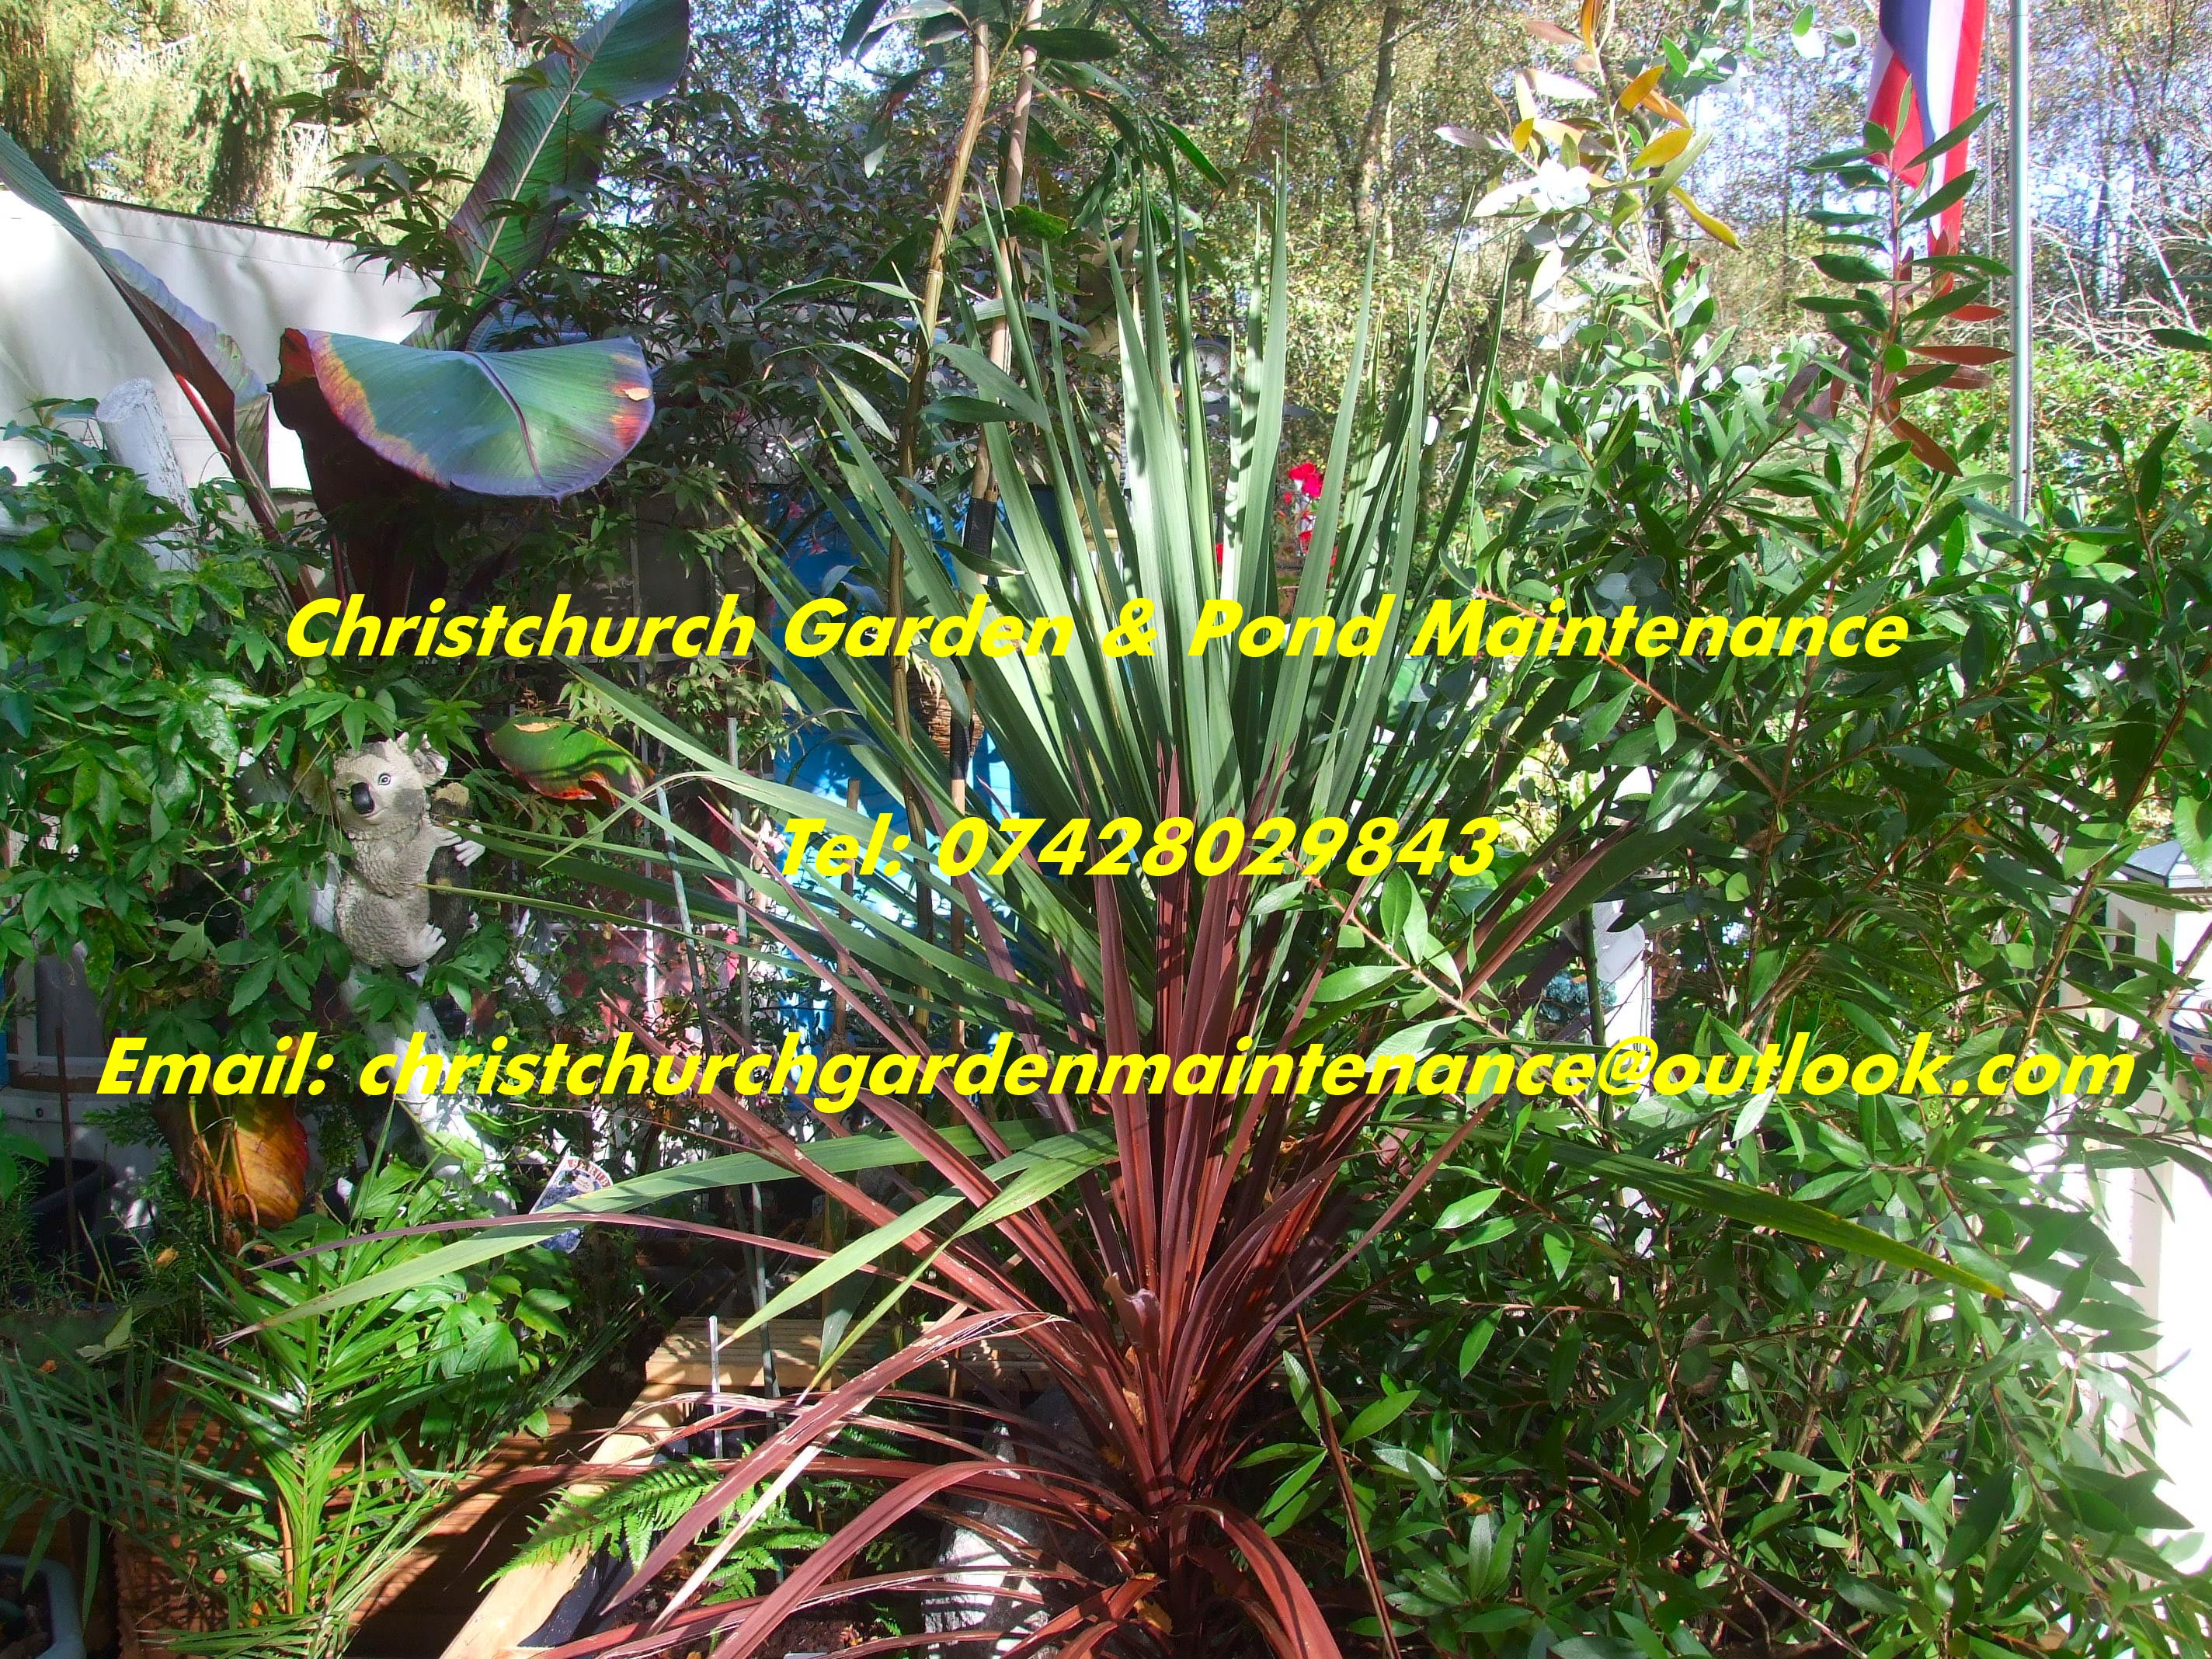 Christchurch Garden & Pond, Landscaping & Maintenance